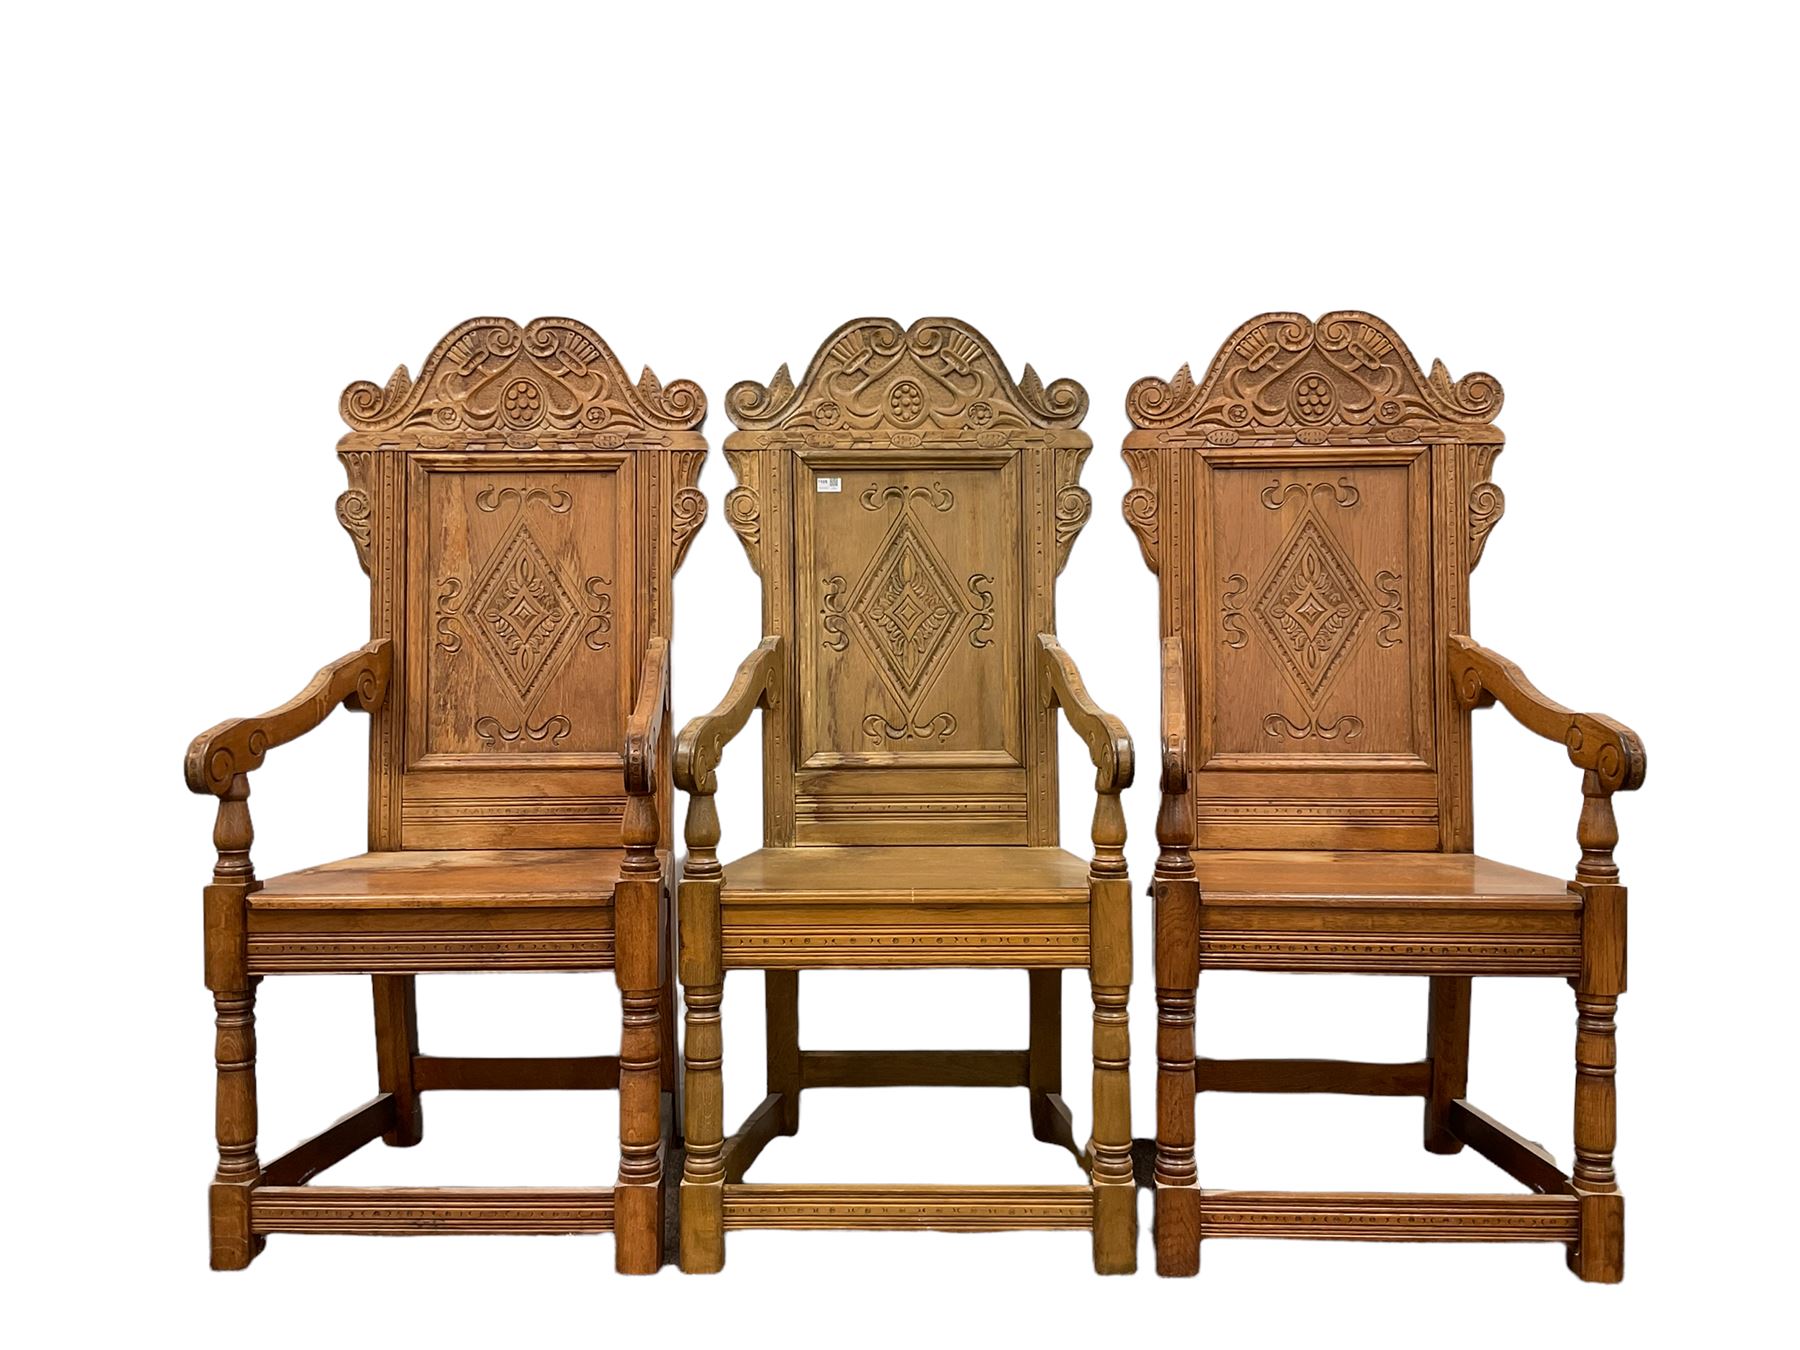 Set six 17th century style oak Wainscot chairs - Image 5 of 8